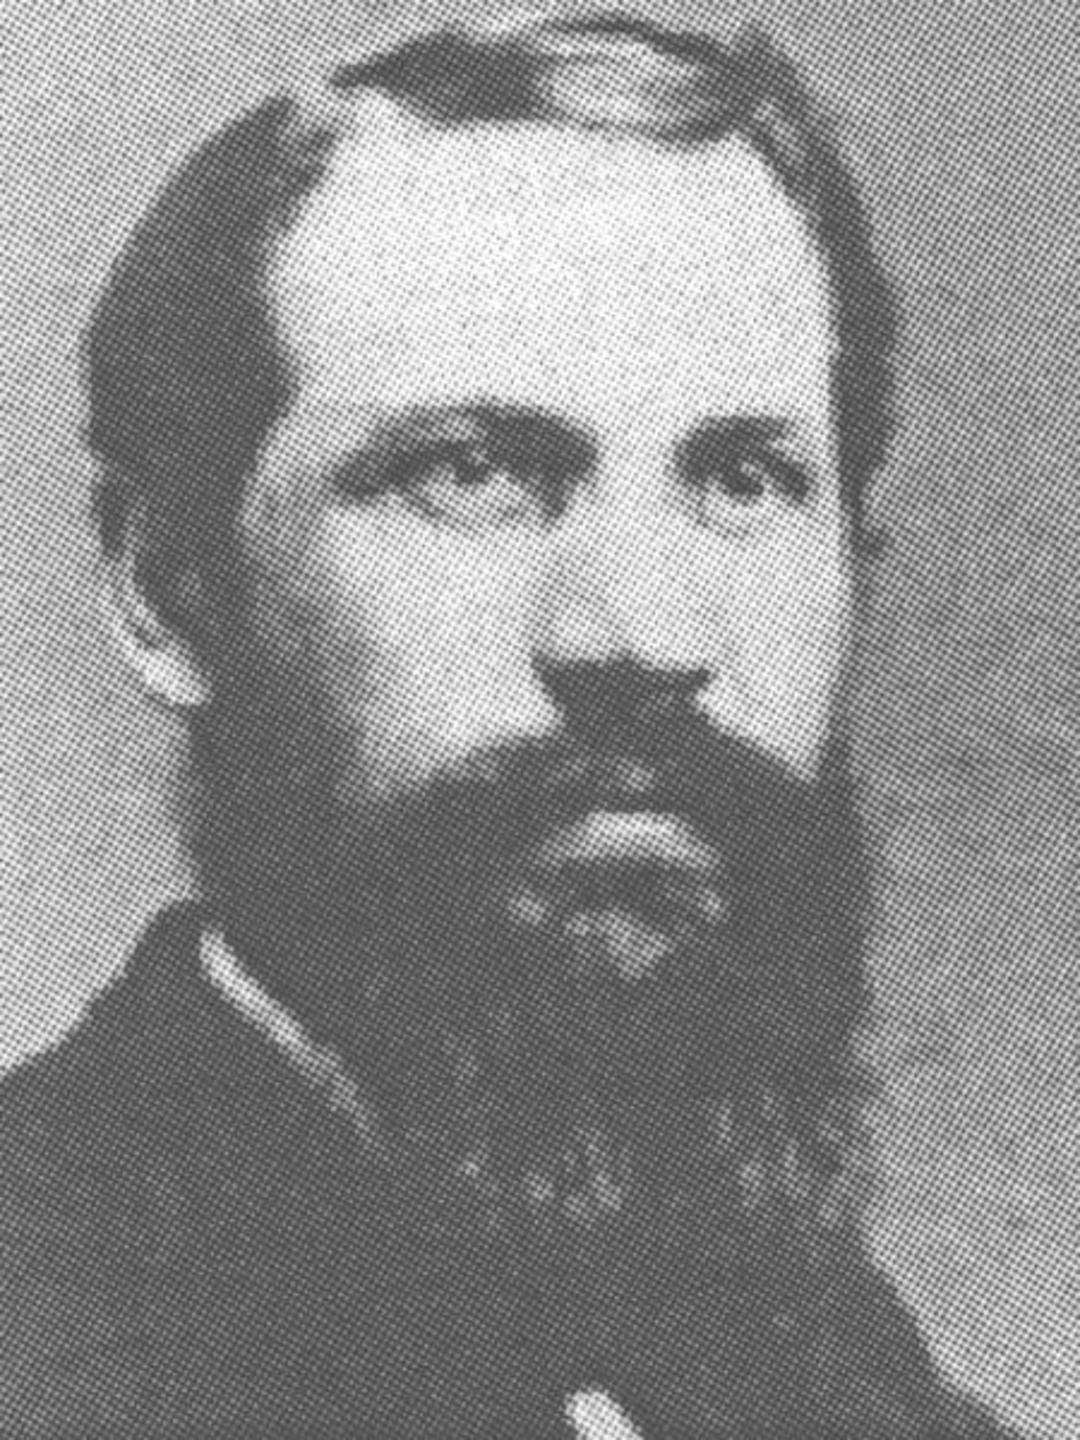 Soren Peter Neve (1839 - 1902) Profile